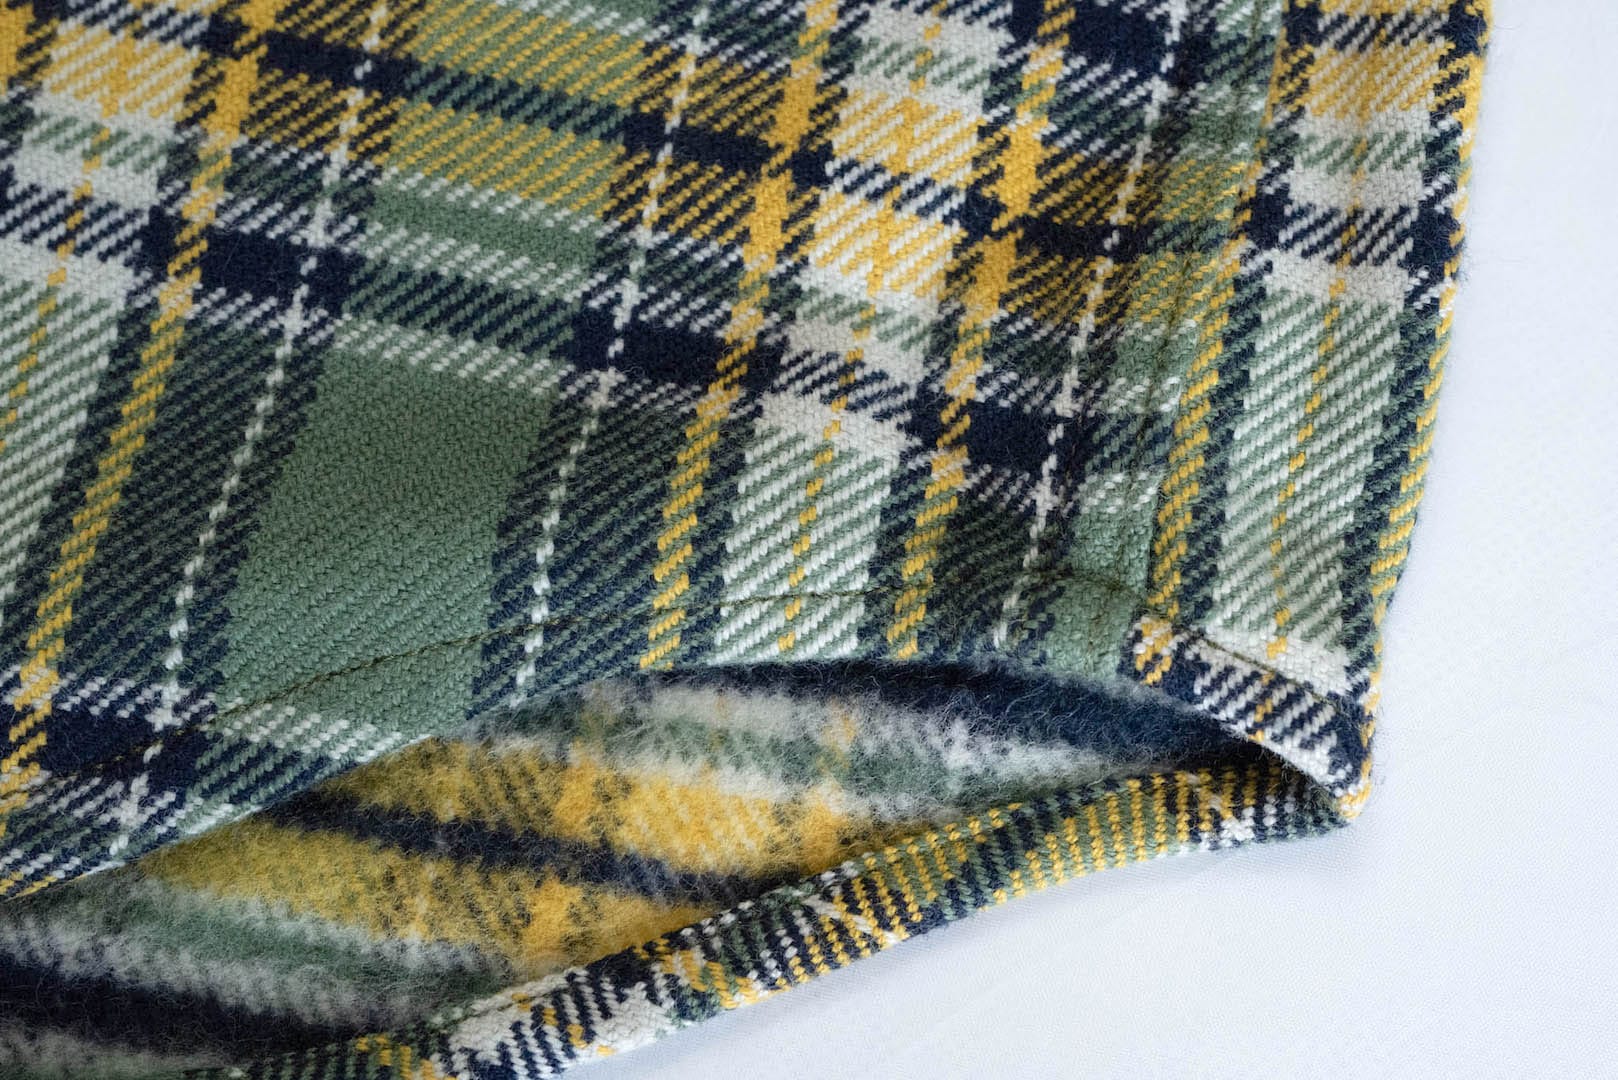 Iron Heart Ultra-Heavy Flannel Tartan Check Western Shirt (Wheat Grass)